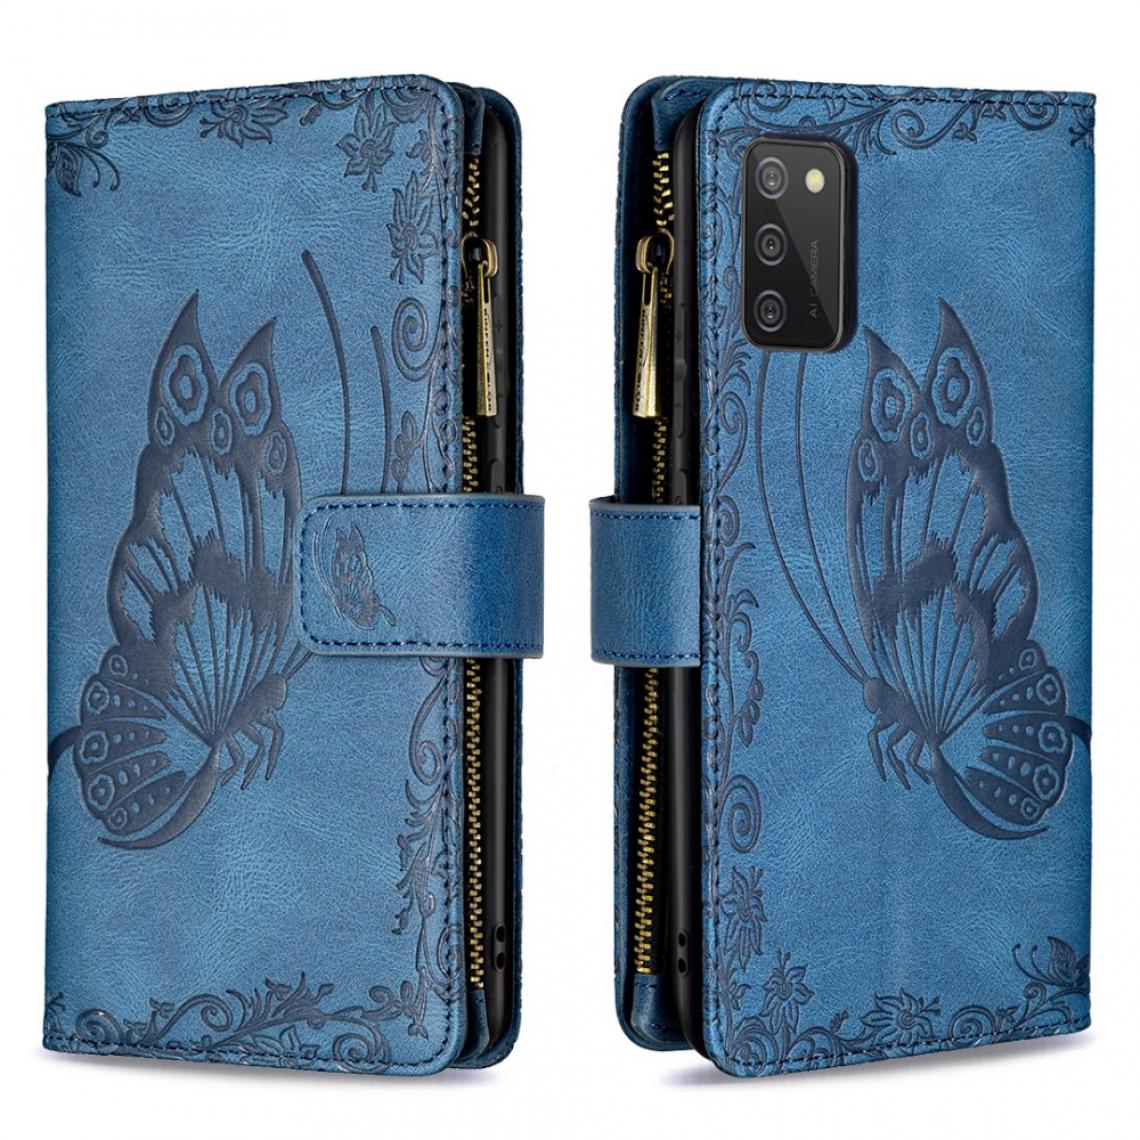 Other - Etui en PU Motif papillon imprimé avec poche zippée (164,2 x 75,9 x 9,1 mm) (version UE) avec support bleu pour votre Samsung Galaxy A02s - Coque, étui smartphone